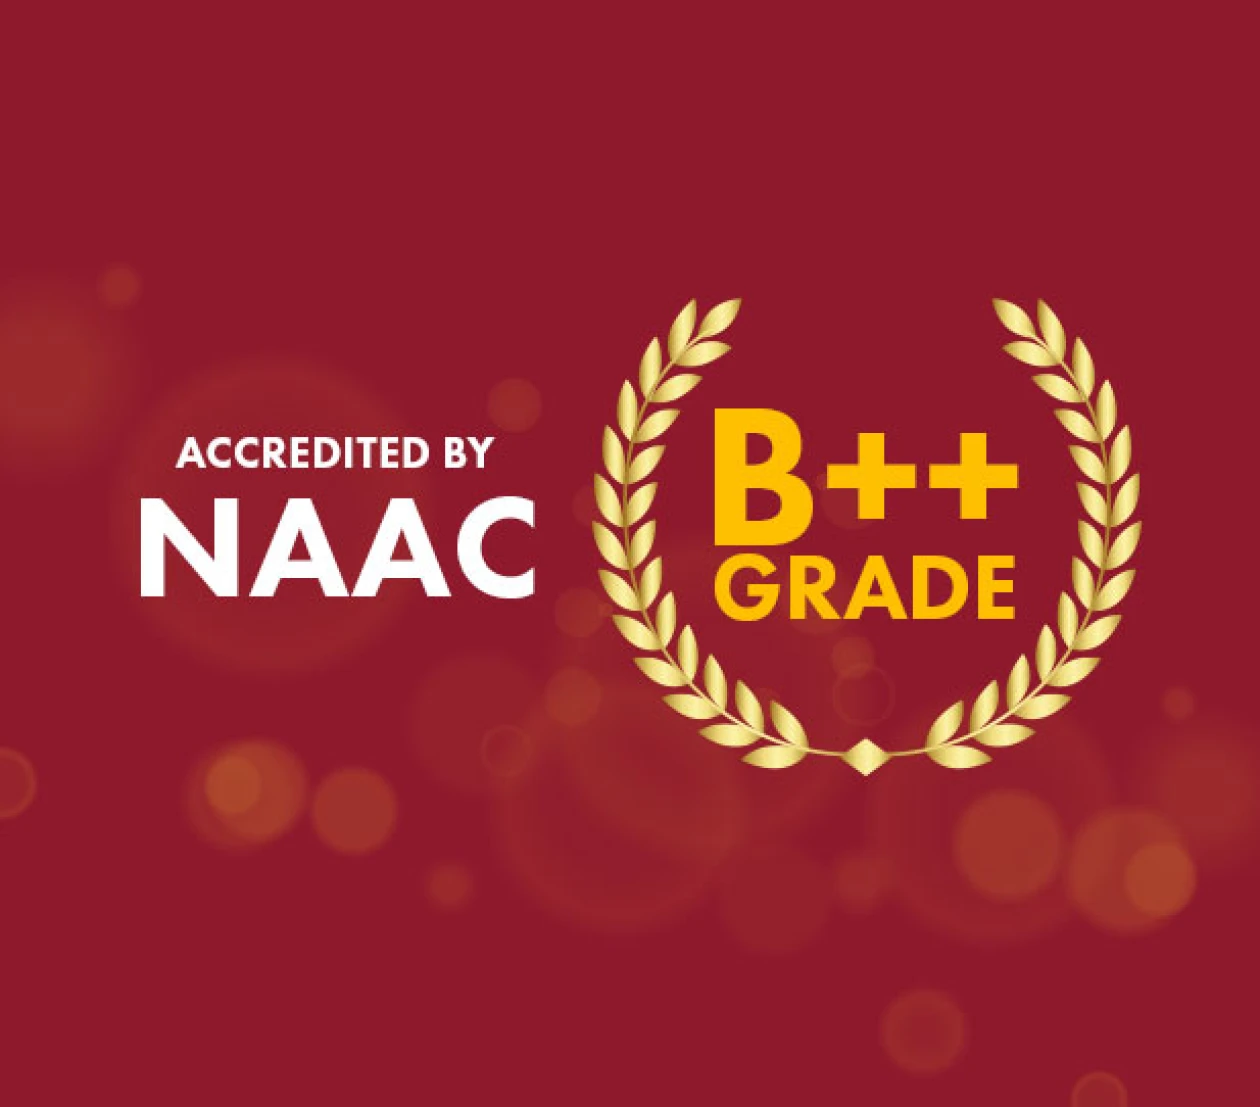 Kaziranga University awarded a prestigious B++ grade by the NAAC